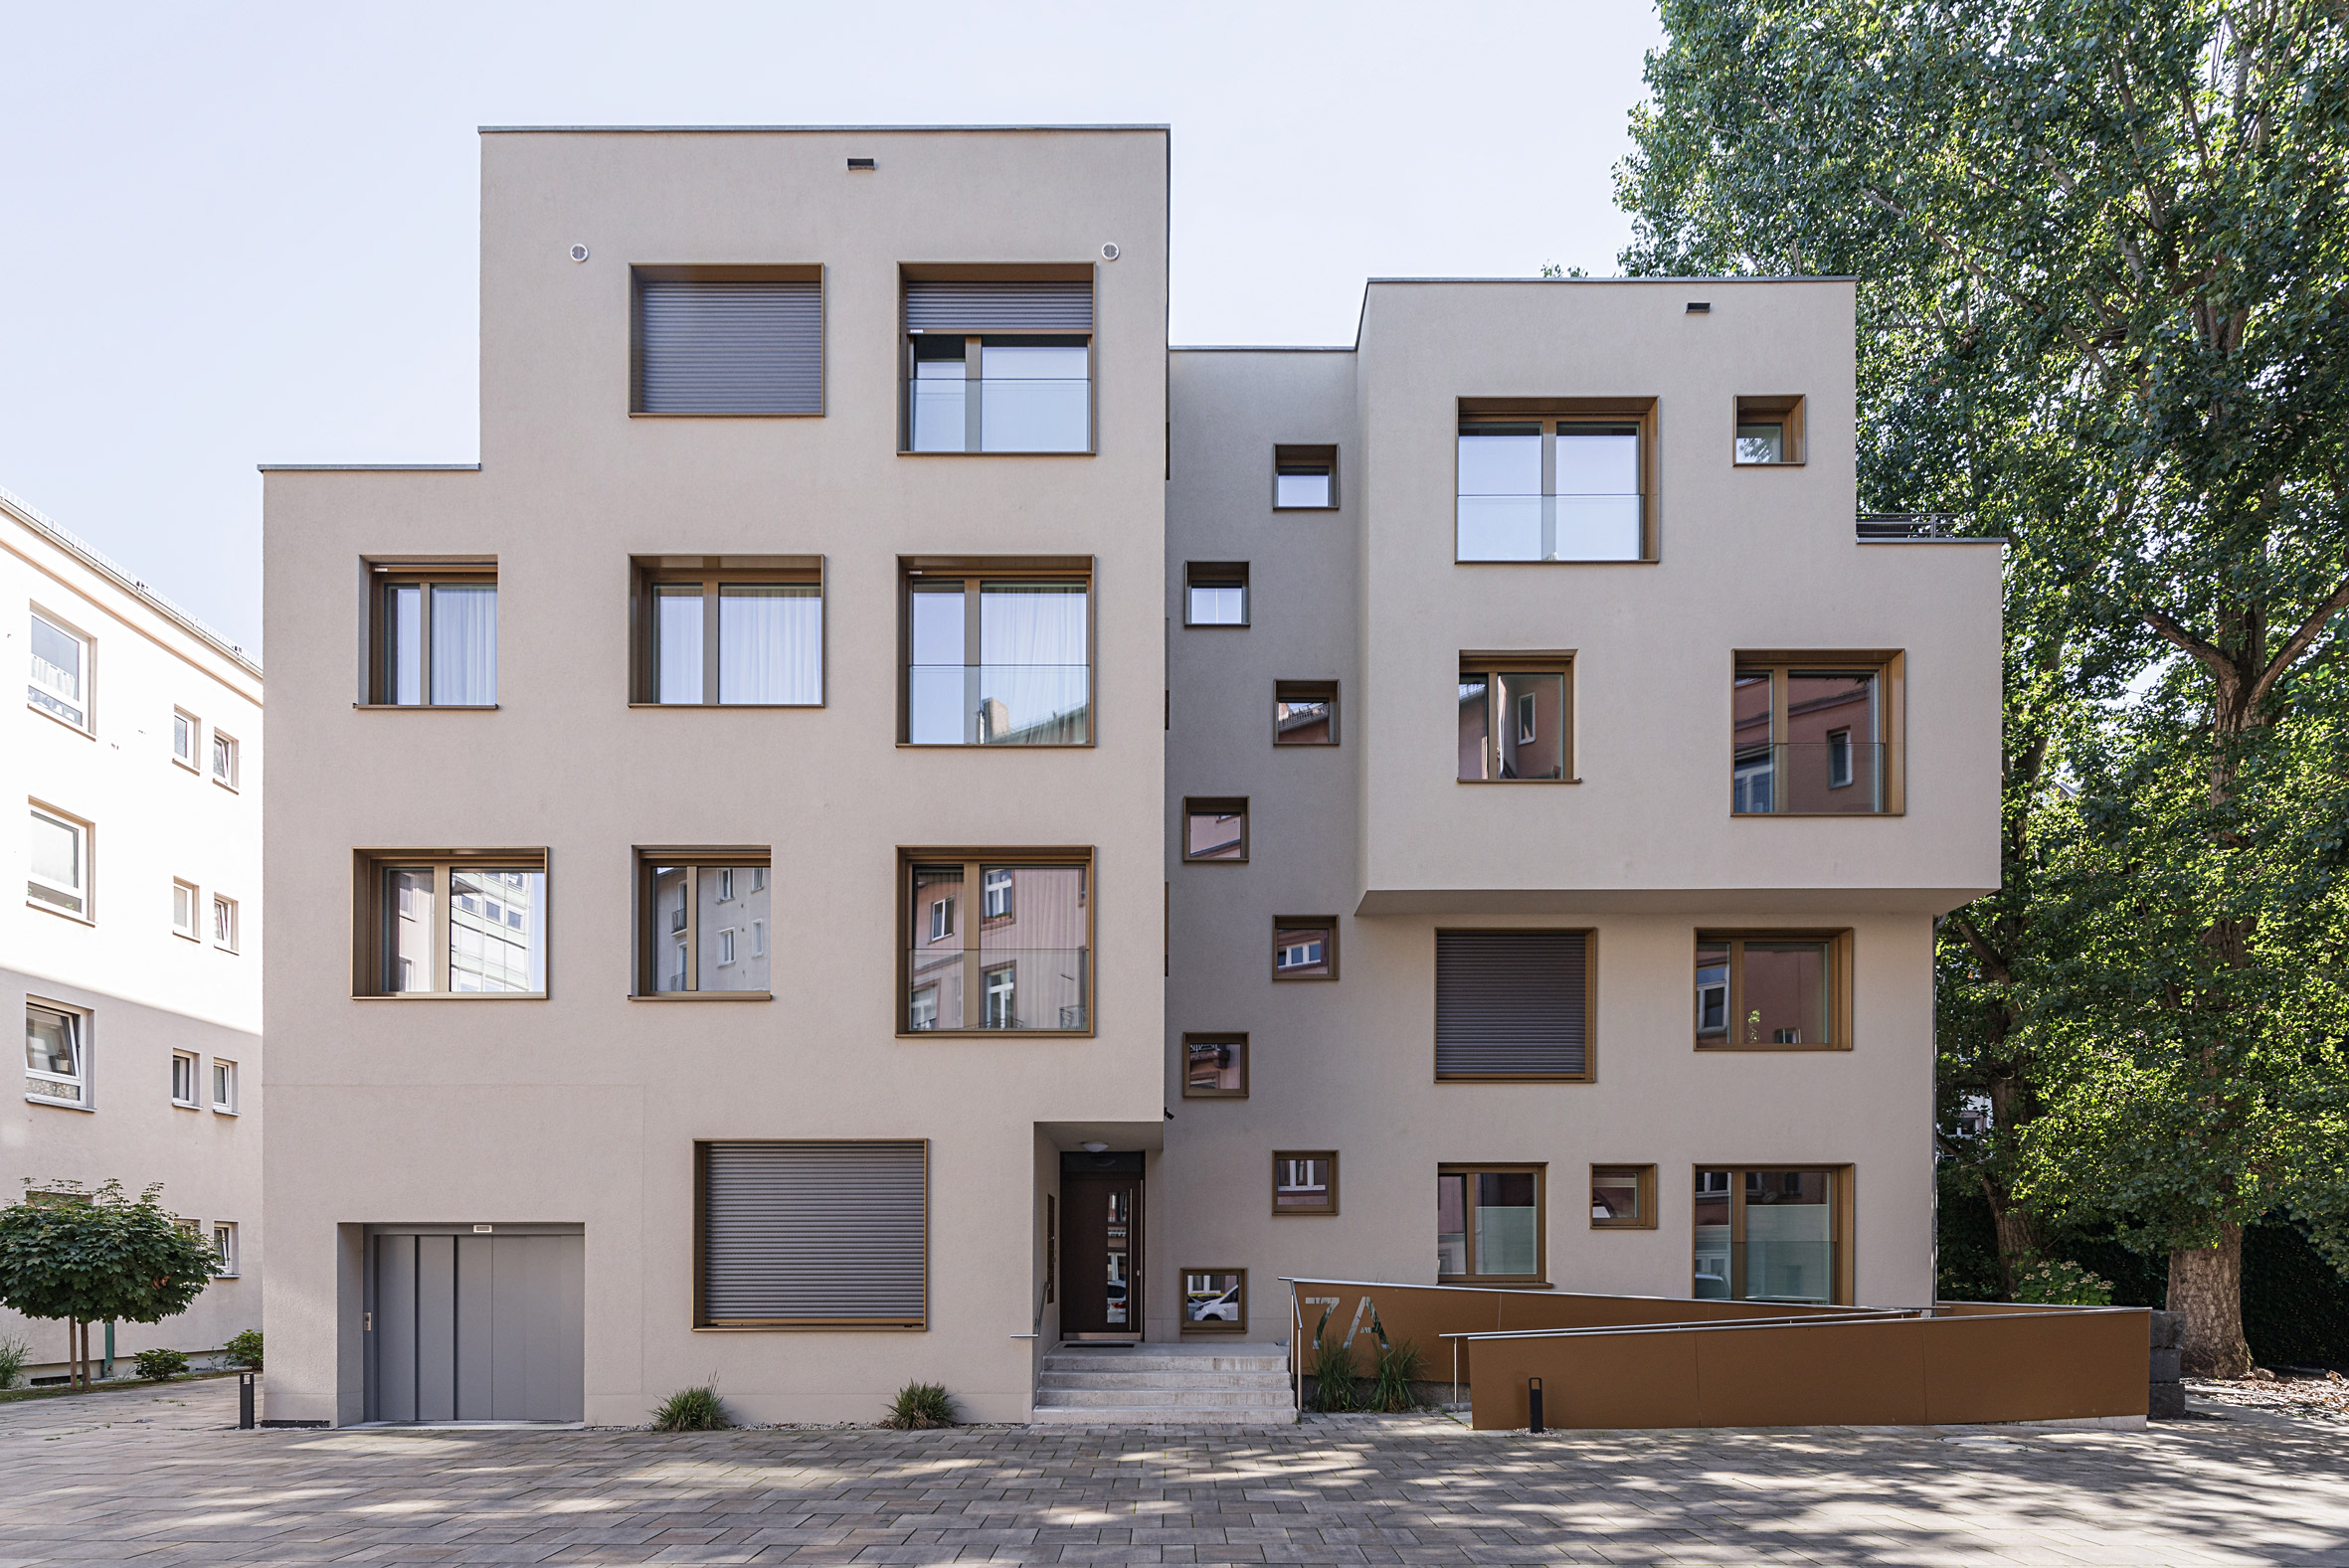 Architekturfotografie Hofbebauung Frankfurt am Main | Gerd Schaller | BAUWERK PERSPEKTIVEN